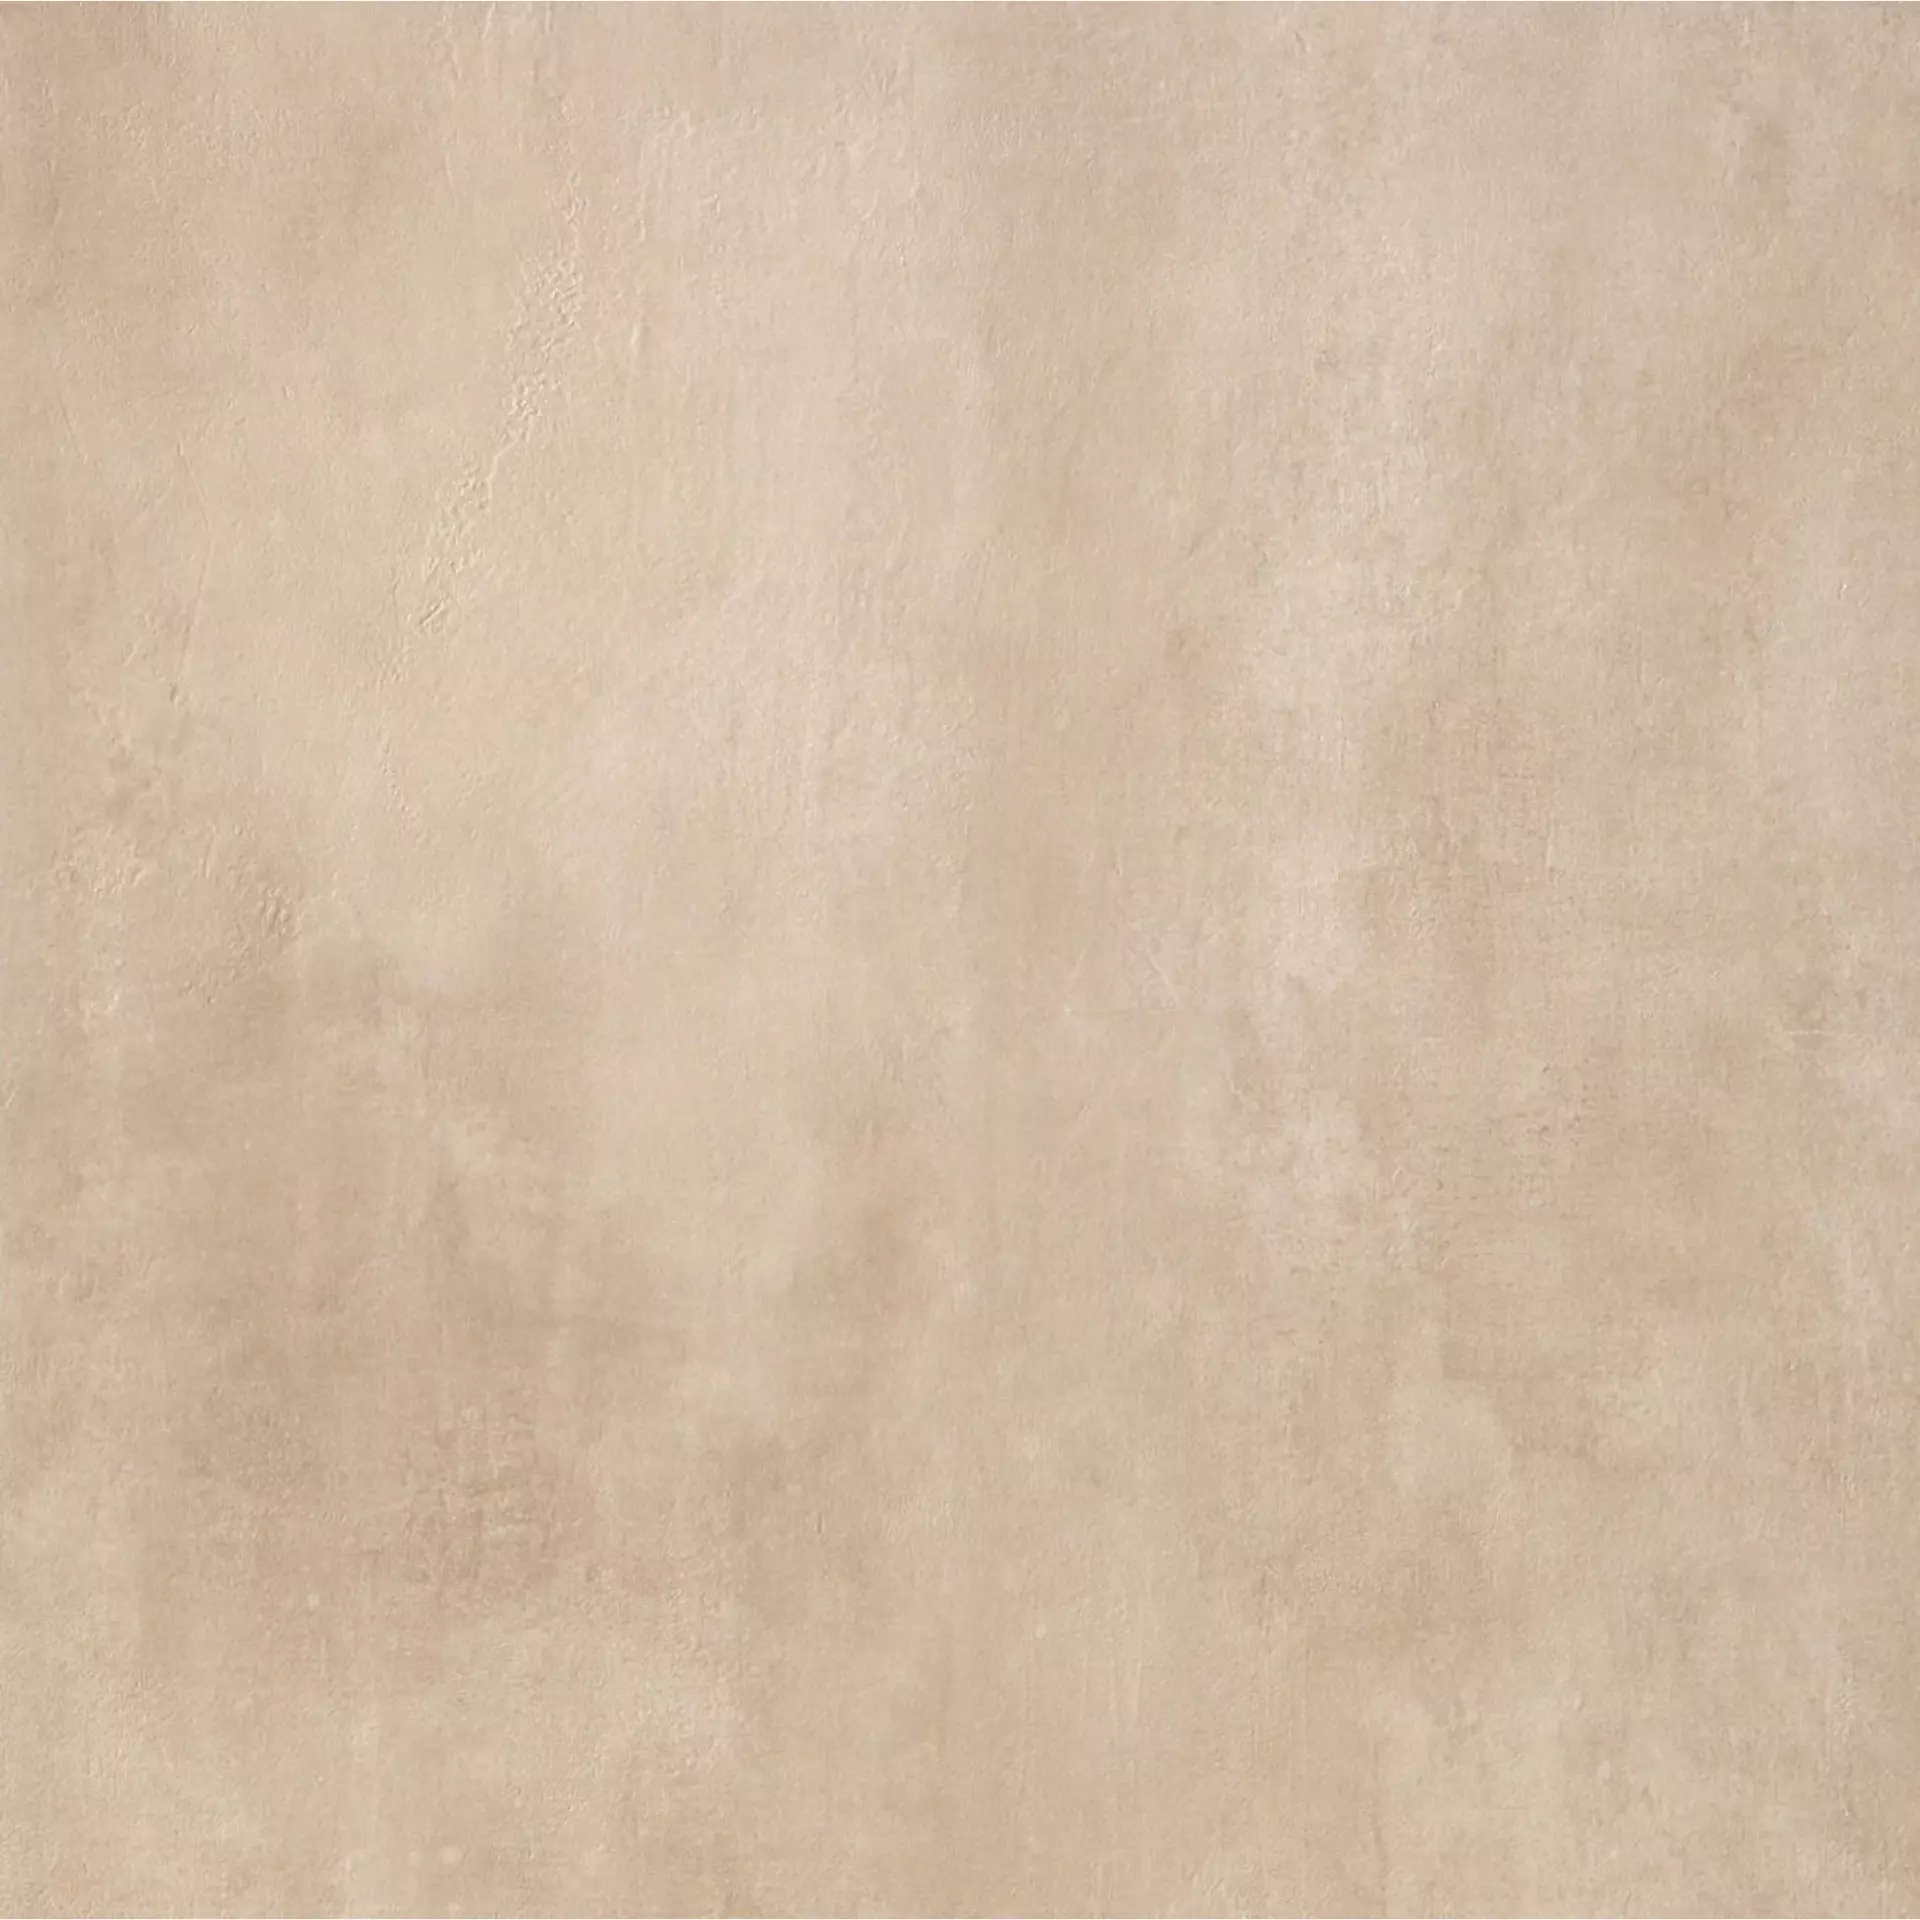 Casalgrande Beton Sand Naturale – Matt Sand 1570013 natur matt 75,5x75,5cm rektifiziert 10mm